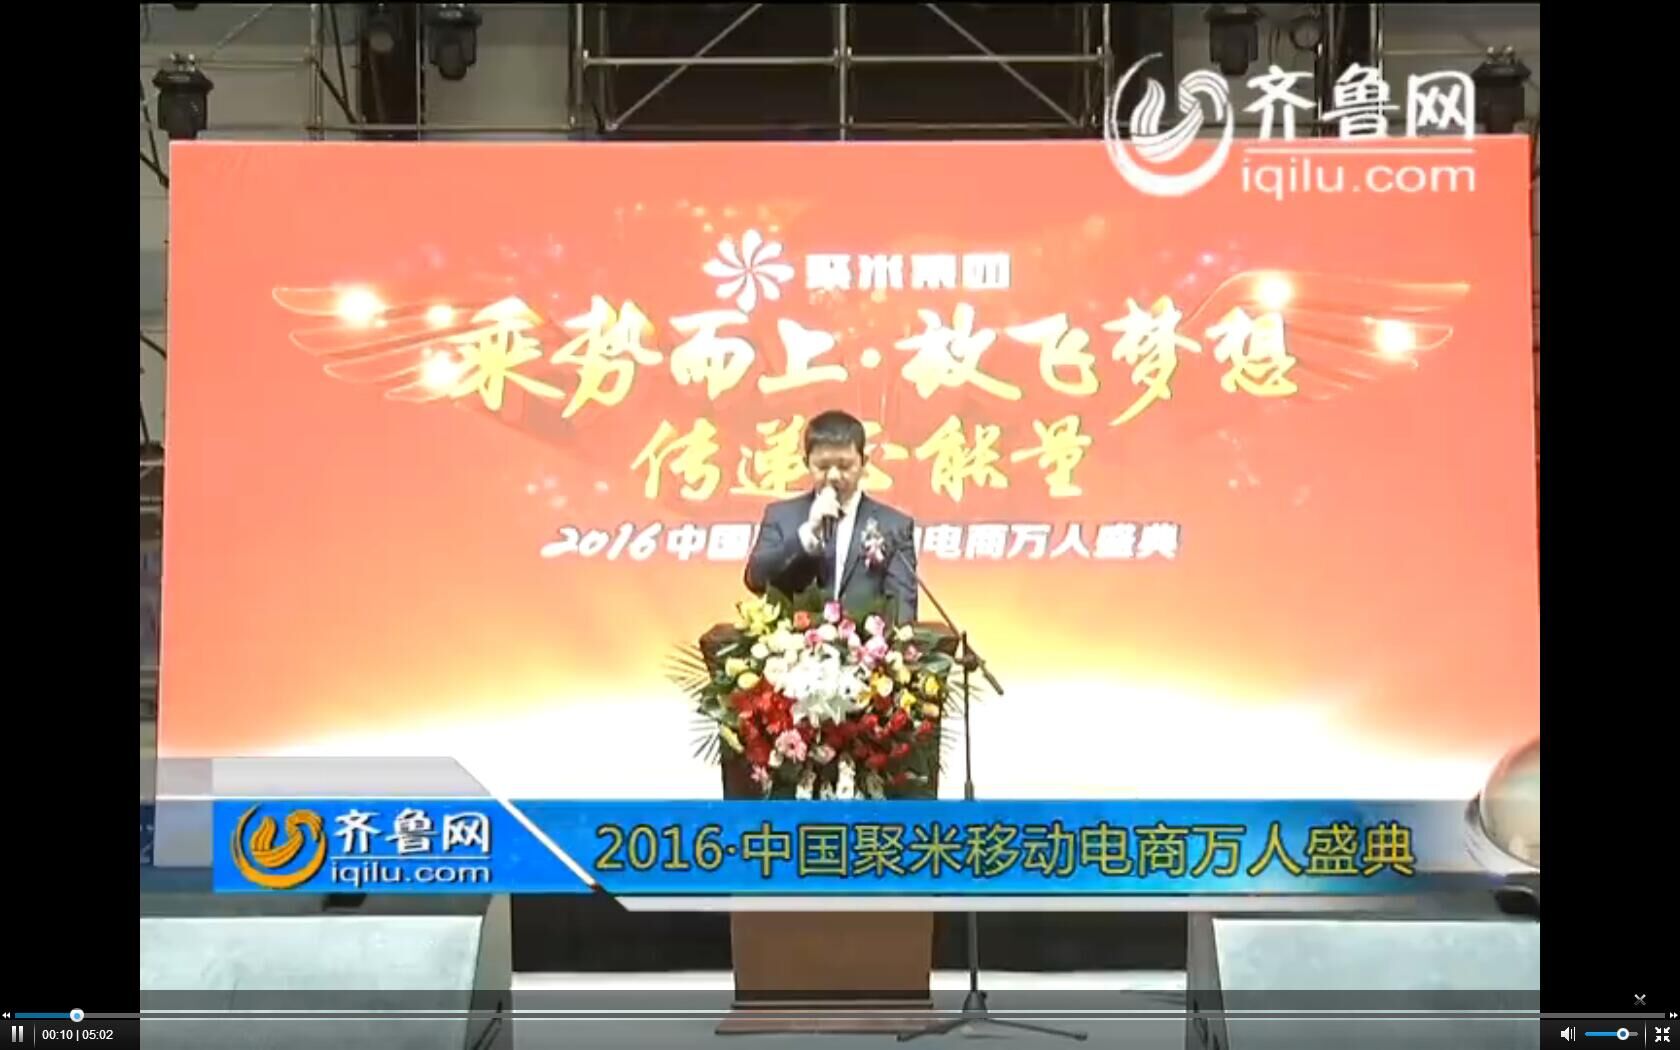 乘势而上·放飞梦想·传递正能量--2016中国聚米移动电商万人盛典颁奖典礼